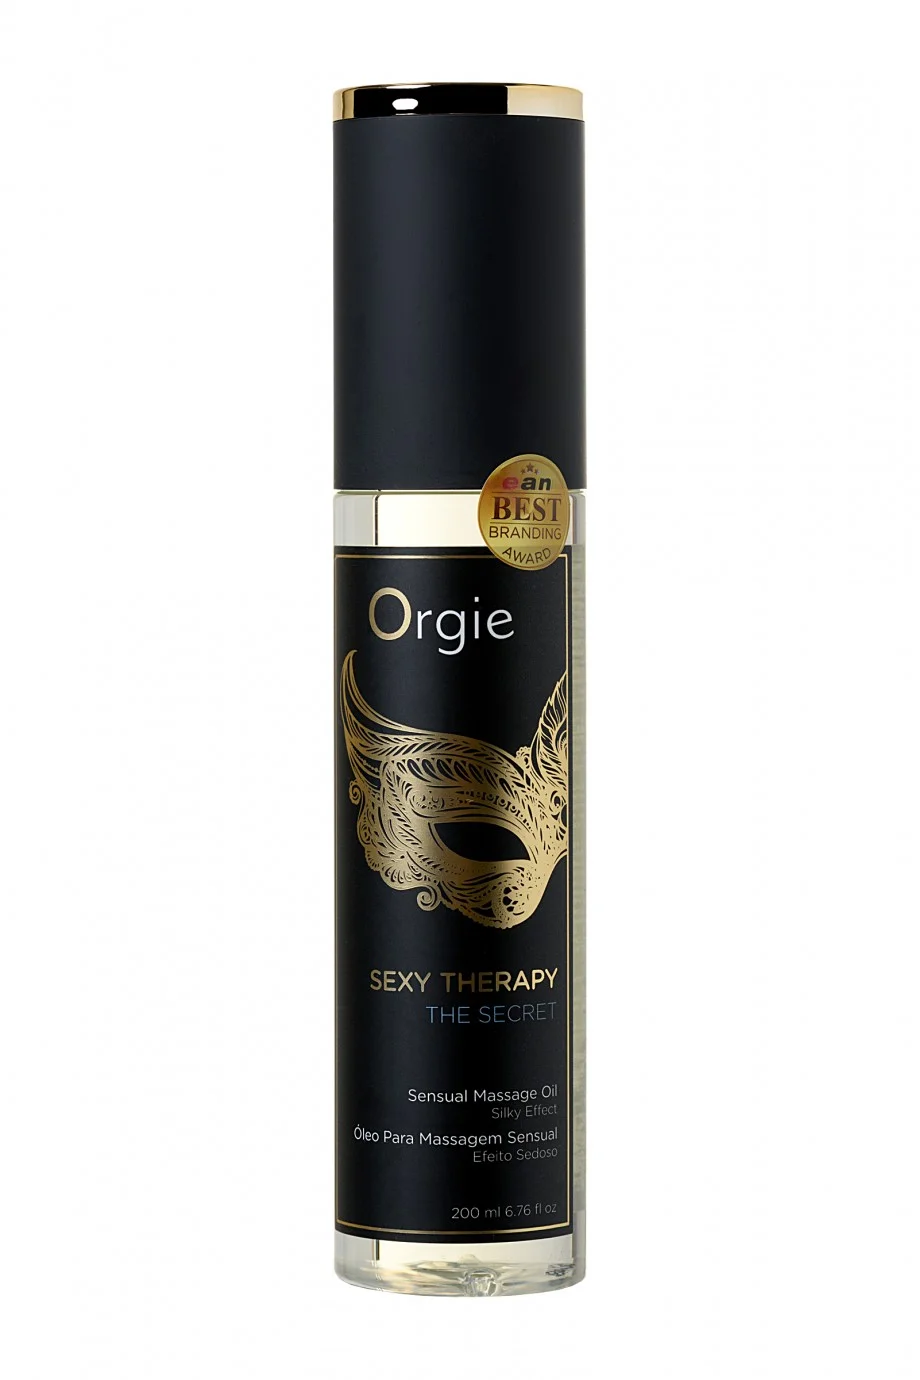 Orgie Sexy Therapy The Secret - минеральное масло для массажа и ухода за кожей, 200 мл.